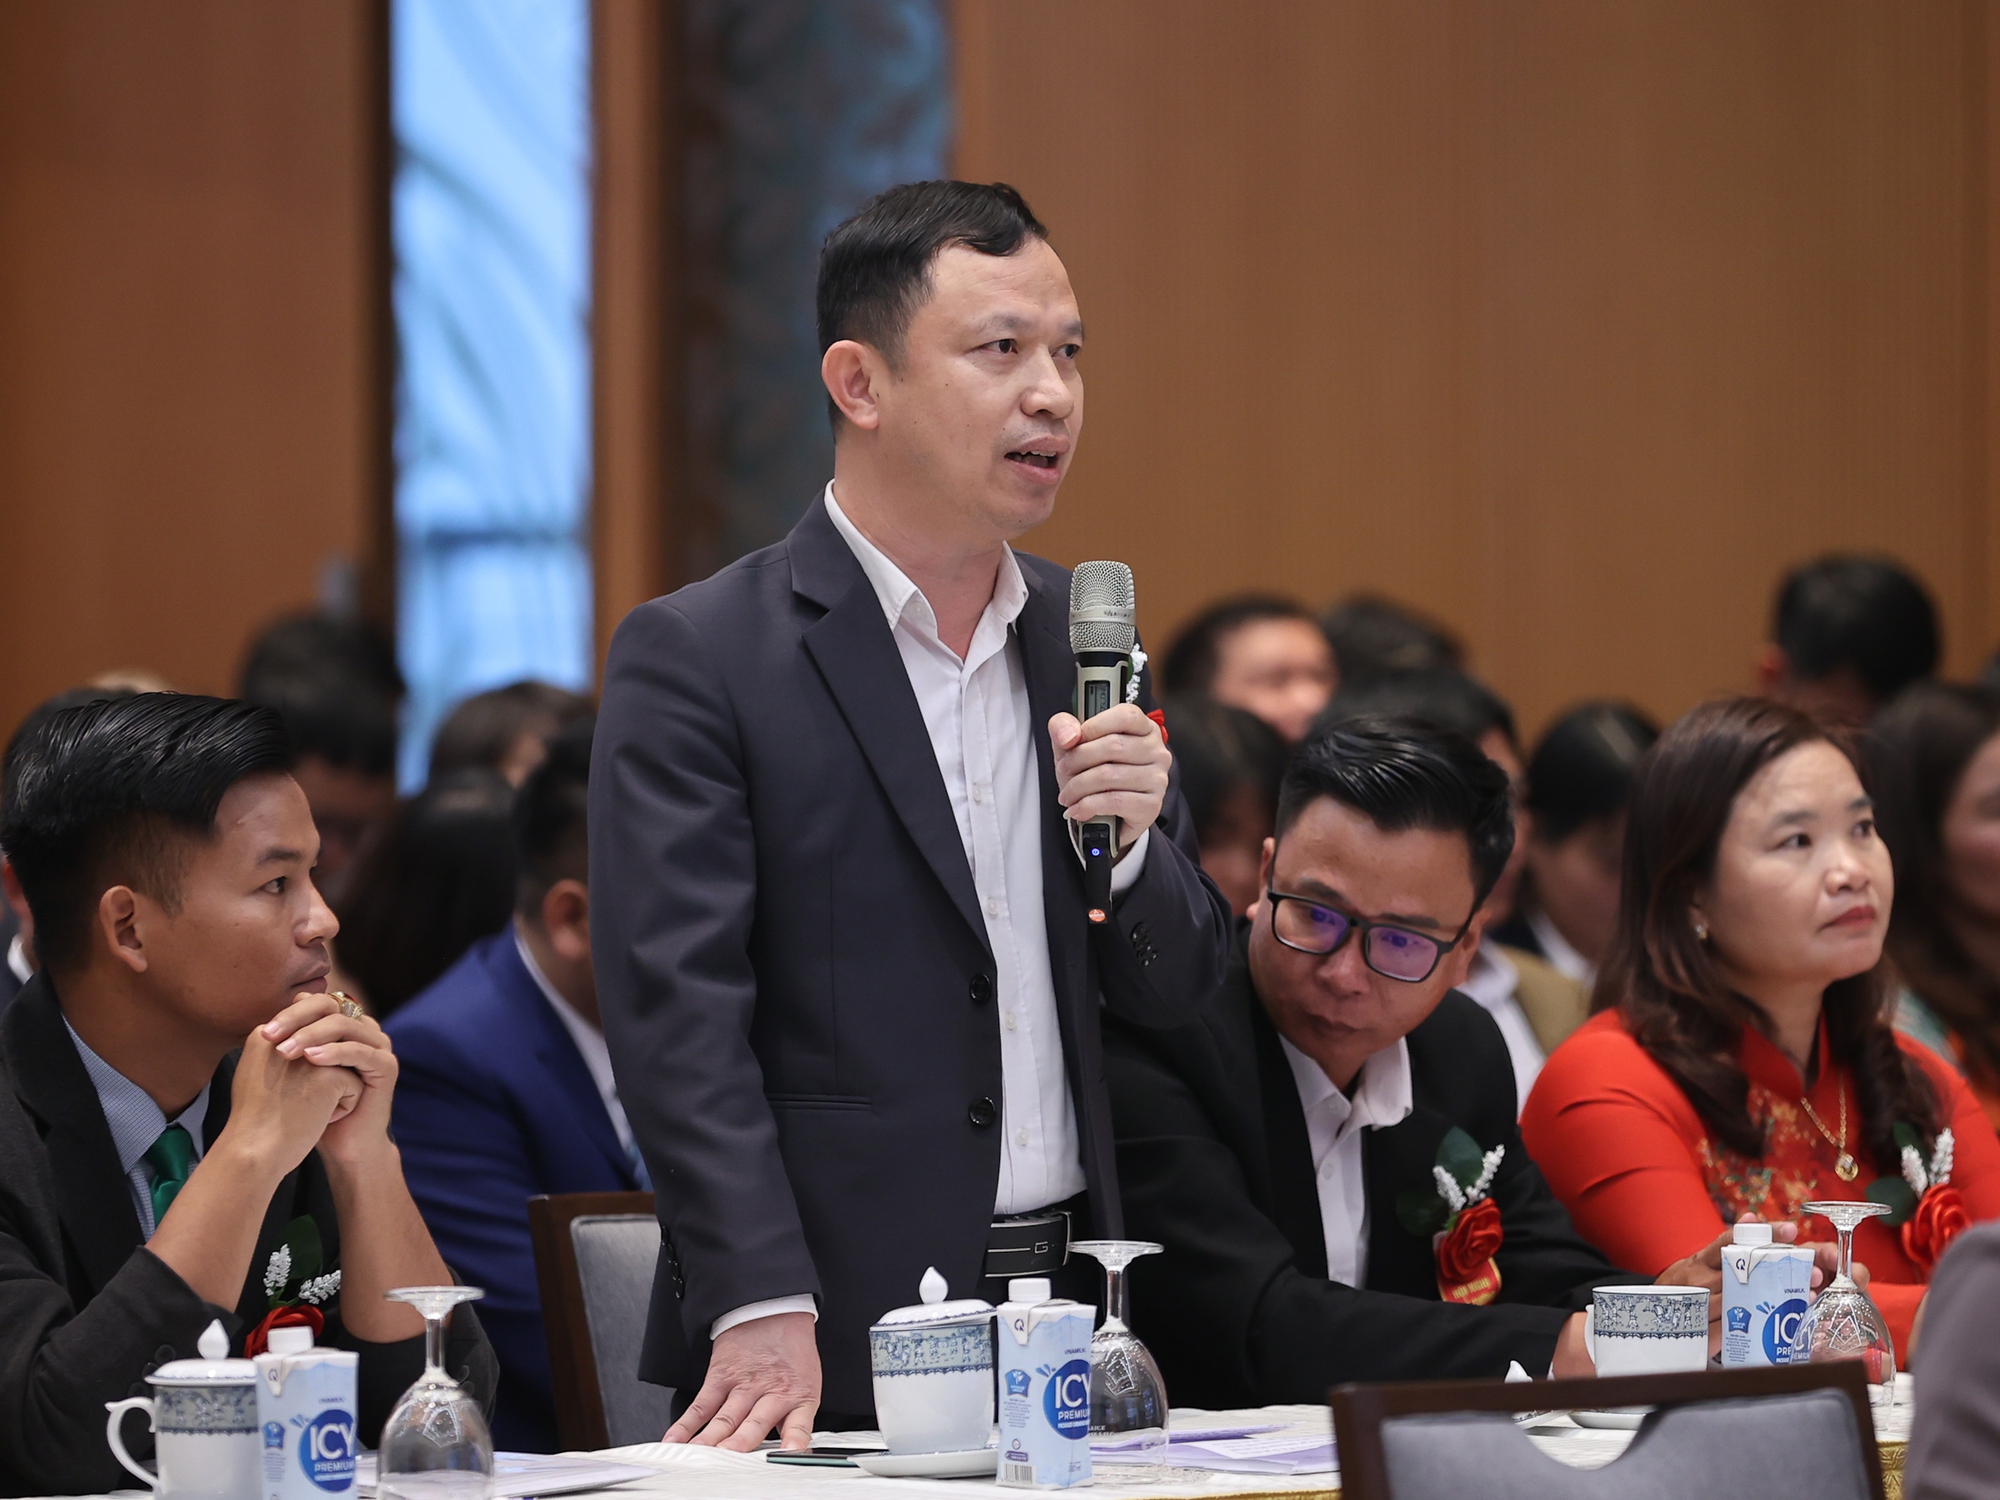 Ông Trần Văn Tân, Giám đốc HTX dược liệu QueenFarm (Thanh Hóa) đặt câu hỏi tại hội nghị - Ảnh: VGP/Nhật Bắc